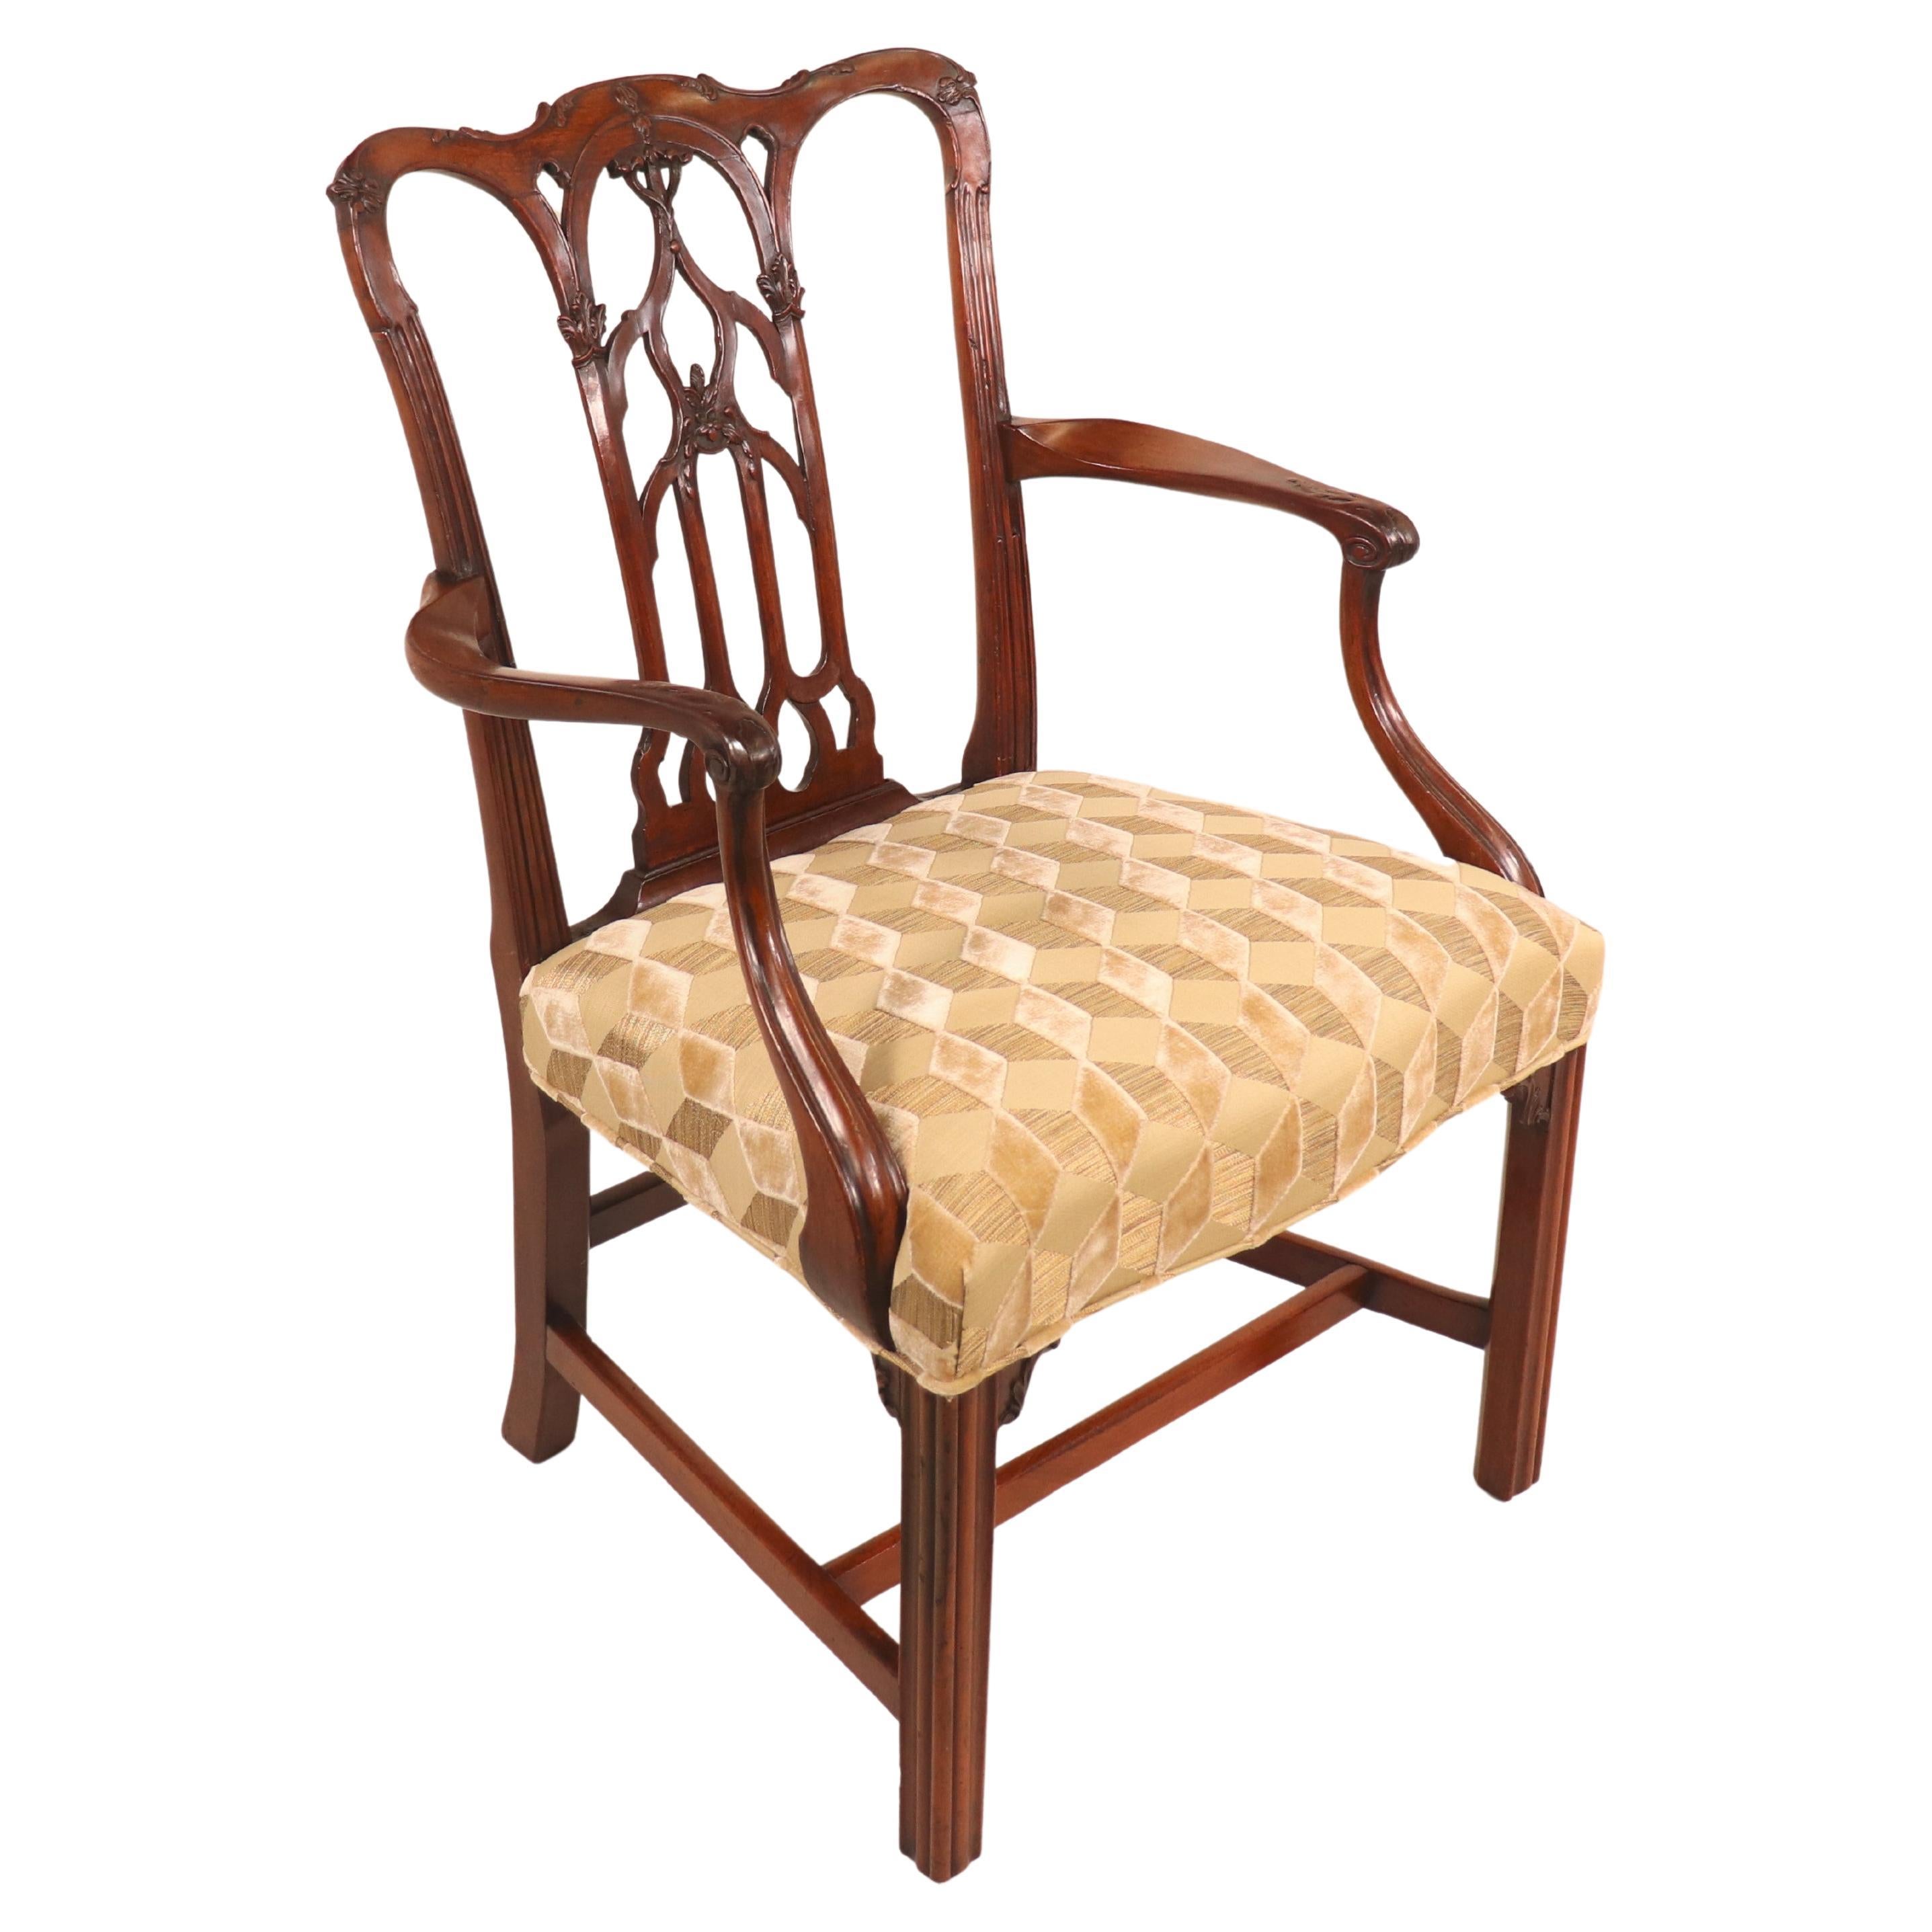 Englischer georgianischer Mahagoni-Sessel aus der georgianischen Ii-Periode um 1750 mit modernem Stoff